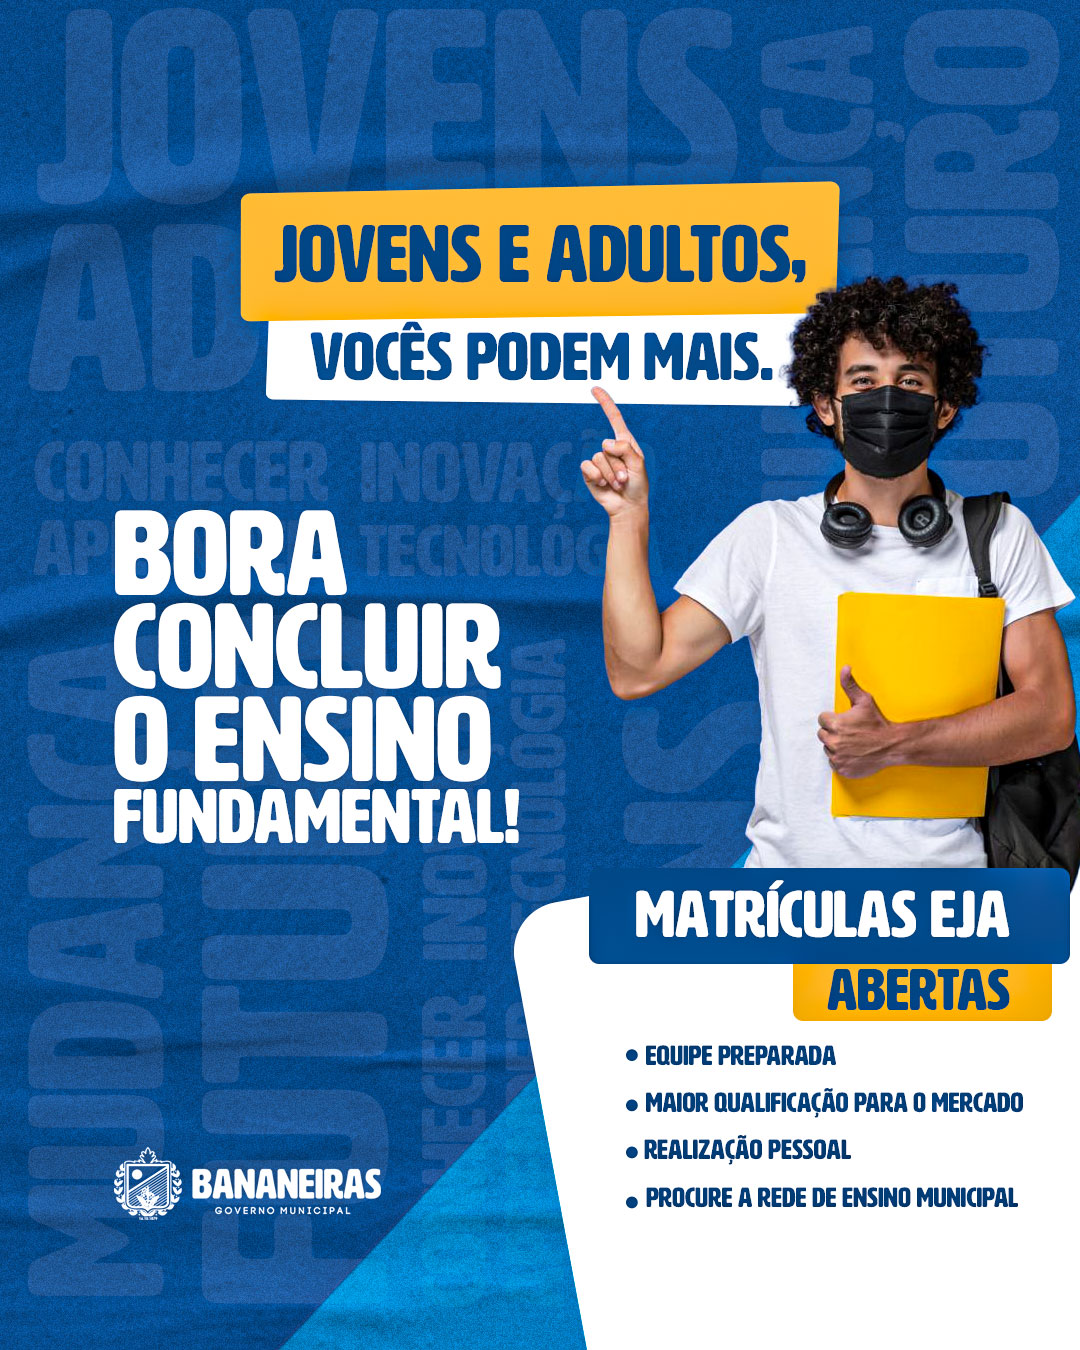 Matrículas da modalidade EJA estão abertas no município de Bananeiras